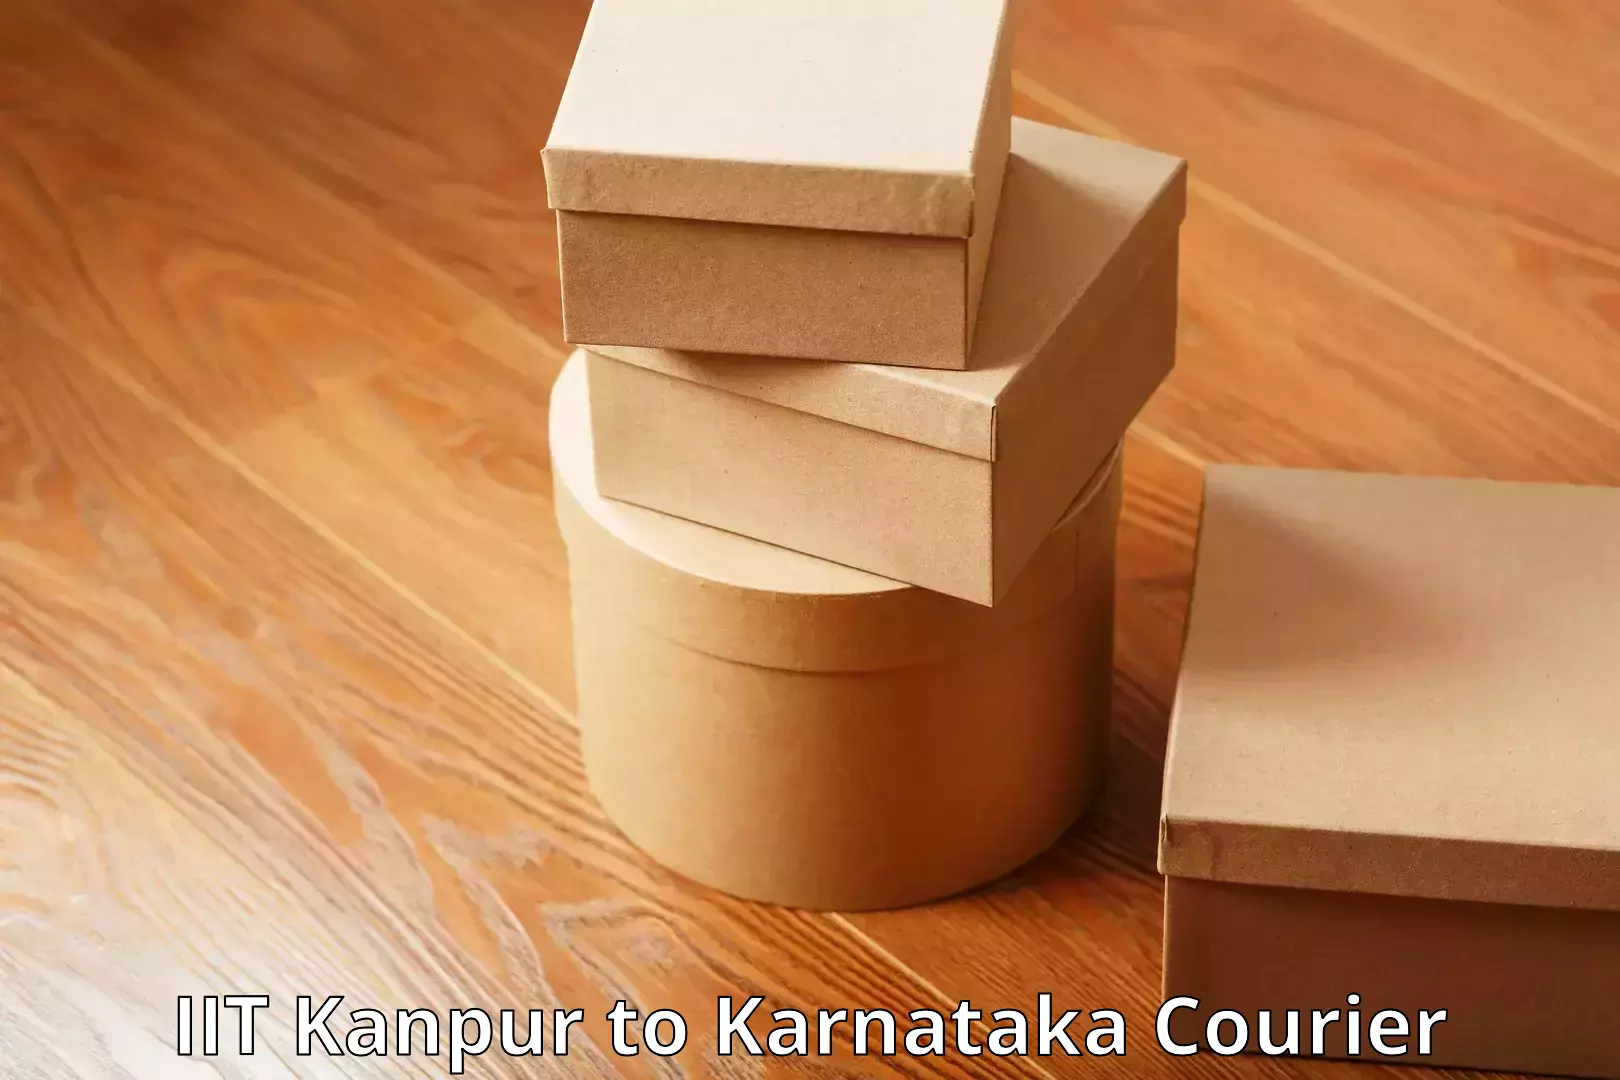 Luggage shipping planner in IIT Kanpur to Karnataka